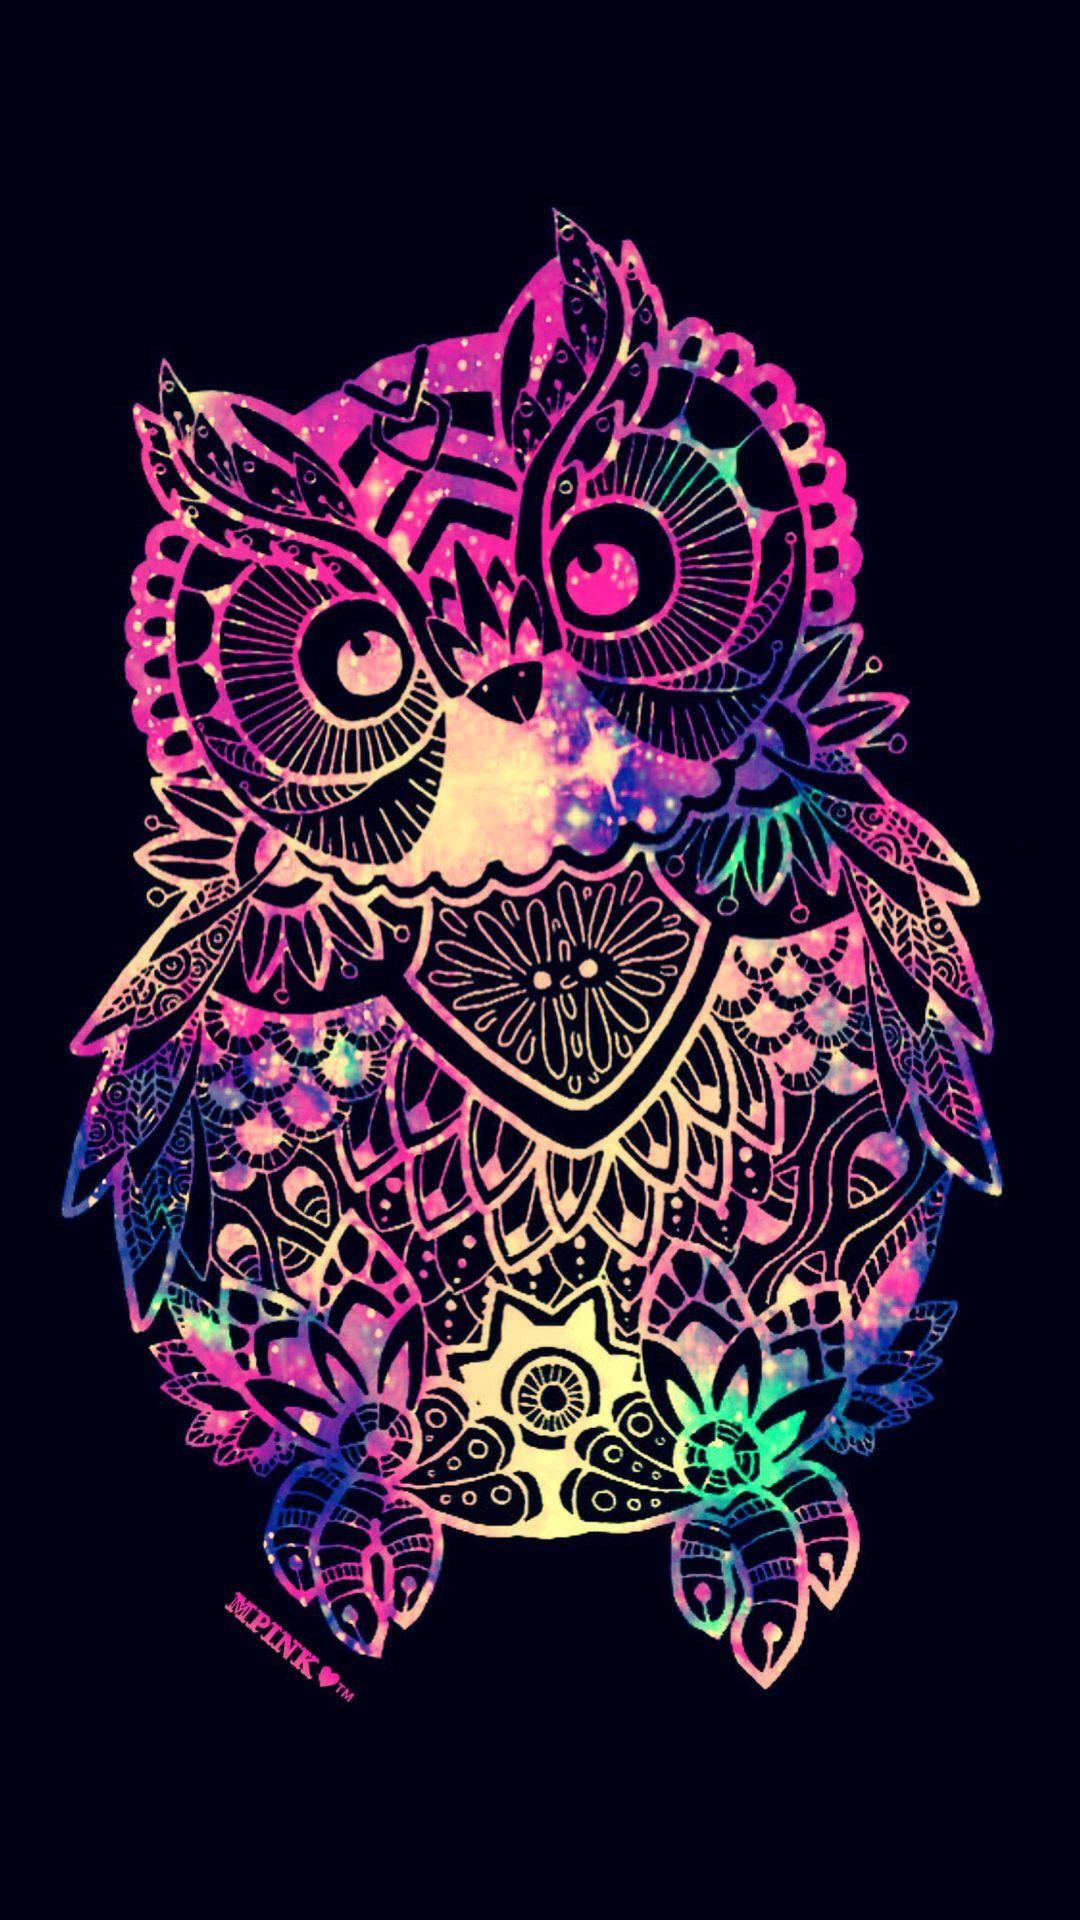 Tribal Owl Galaxy Wallpaper #androidwallpaper #iphonewallpaper